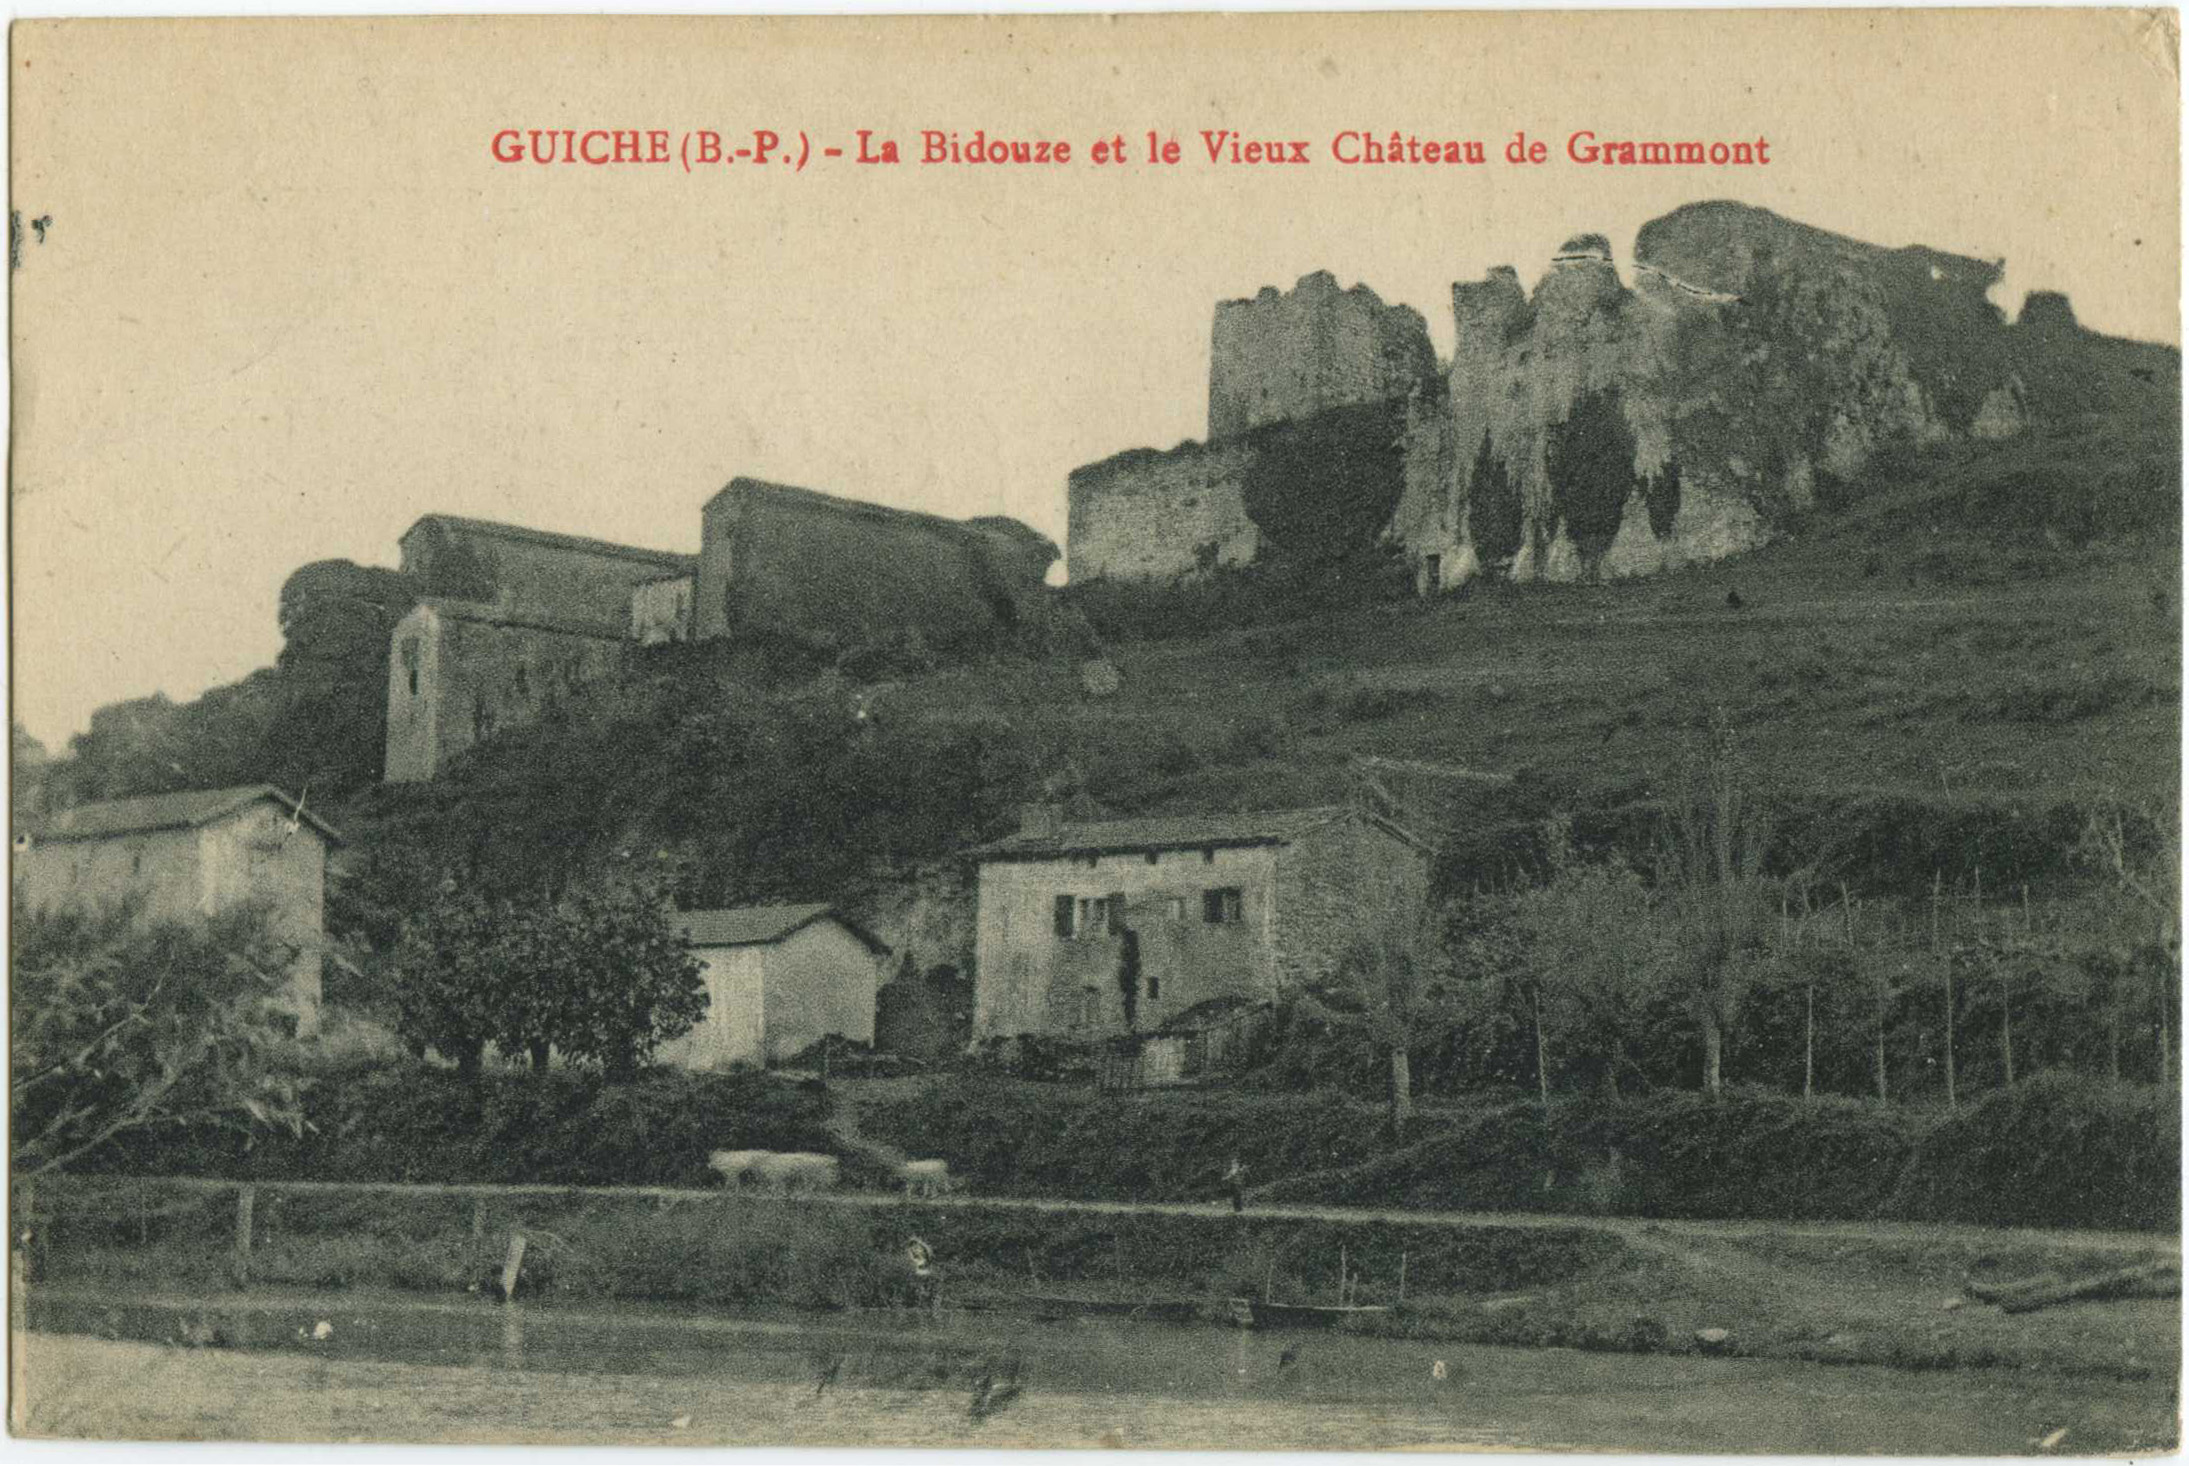 Guiche - La Bidouze et le Vieux Château de Grammont